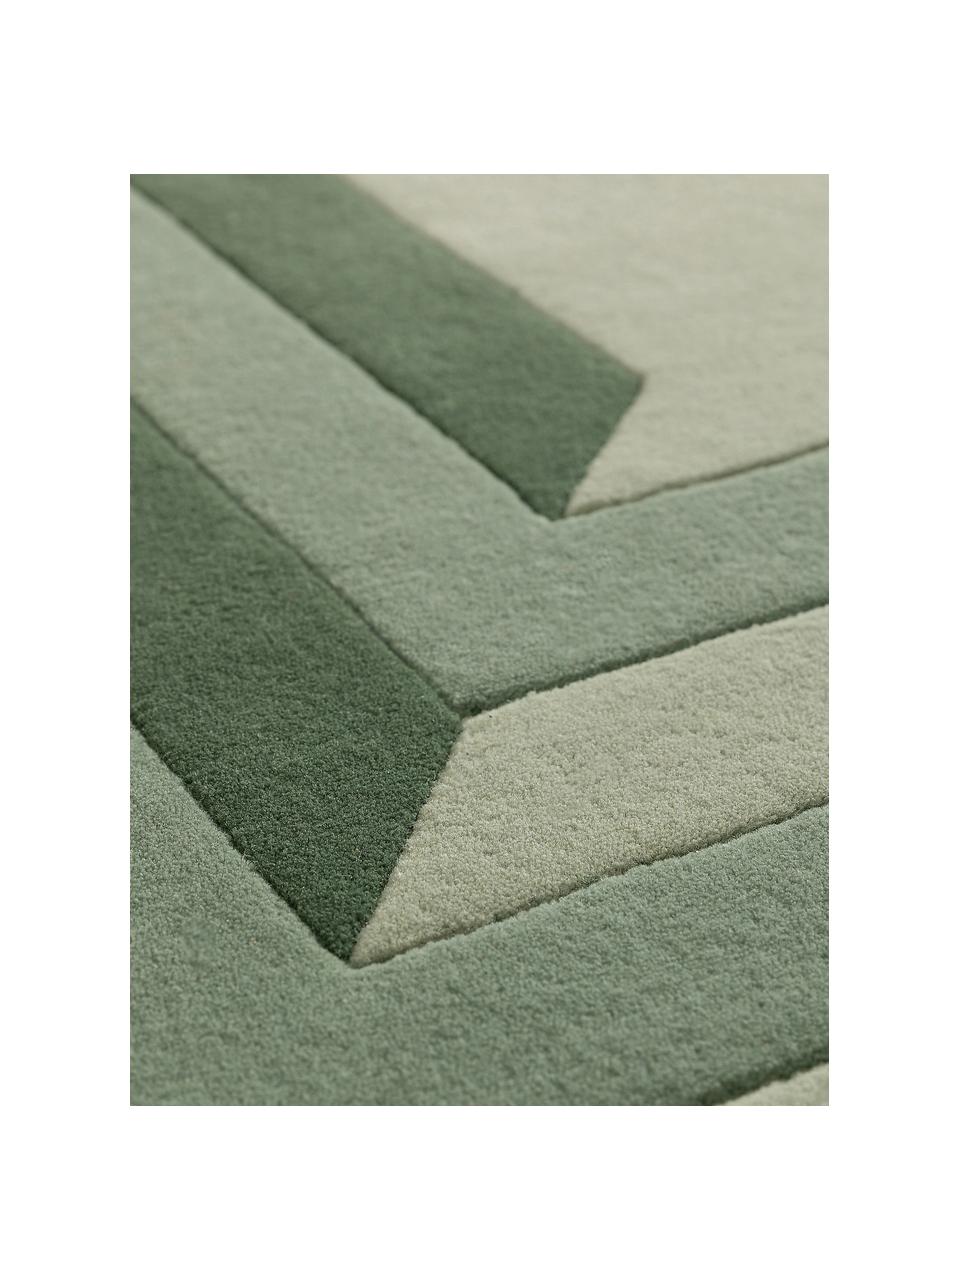 Ručně všívaný vlněný koberec Tilo, 100 % vlna

V prvních týdnech používání vlněných koberců se může objevit charakteristický jev uvolňování vláken, který po několika týdnech používání ustane., Odstíny zelené, Š 160 cm, D 230 cm (velikost M)